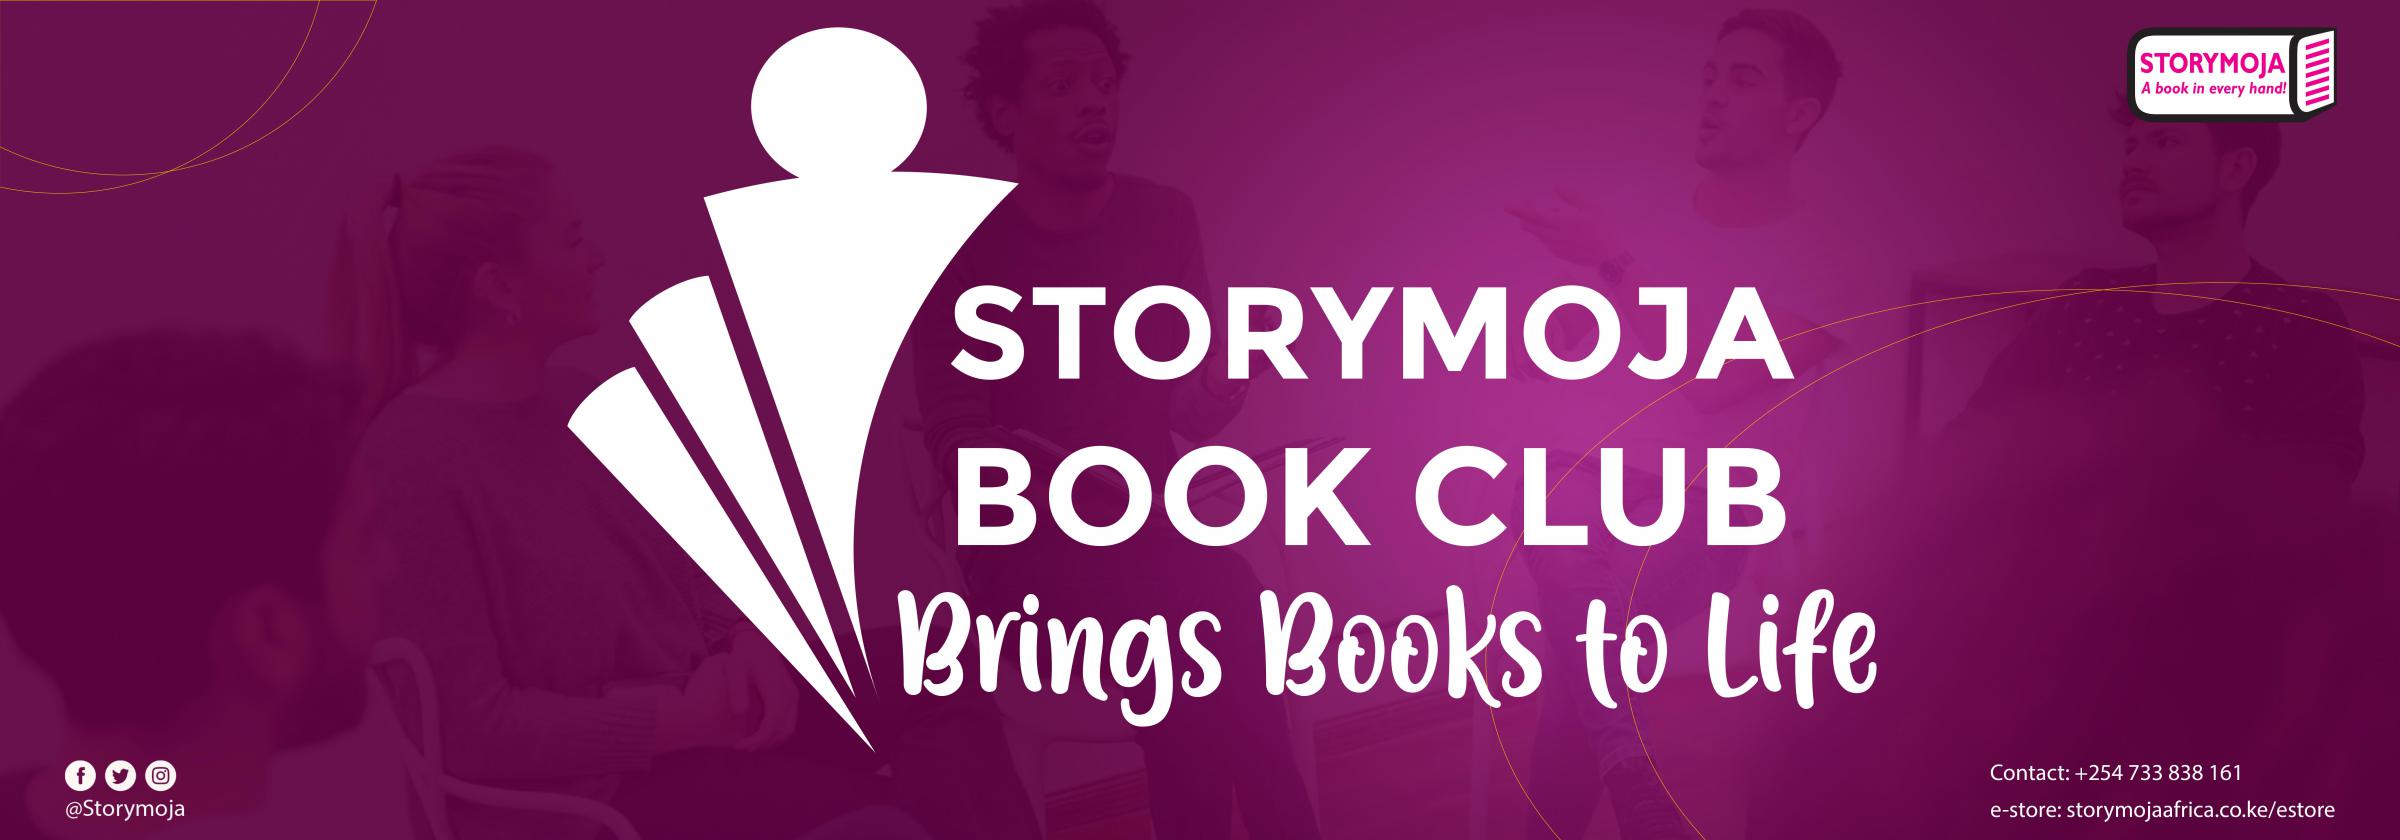 Storymoja Bookclub -storymoja publishers